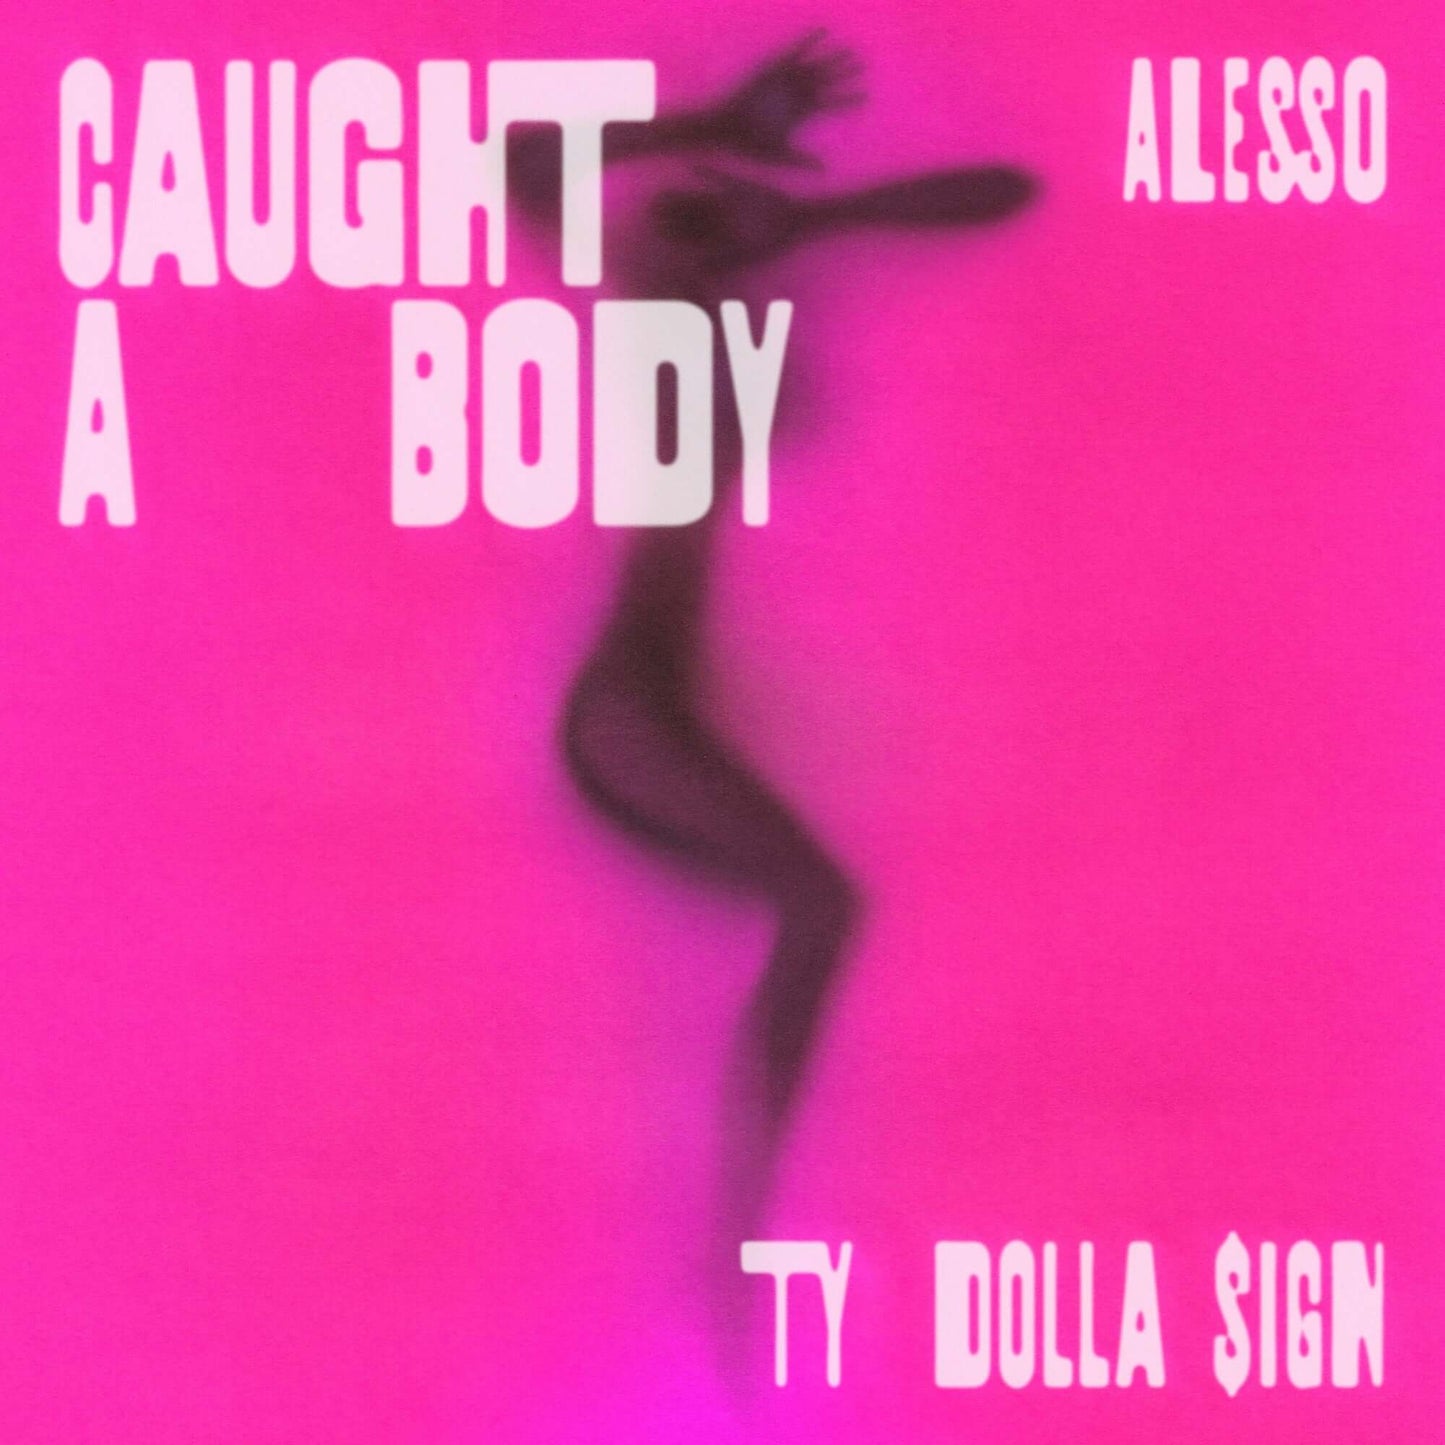 Alesso &amp; Ty Dolla $ign - Atrapado un cuerpo (Studio Acapella)